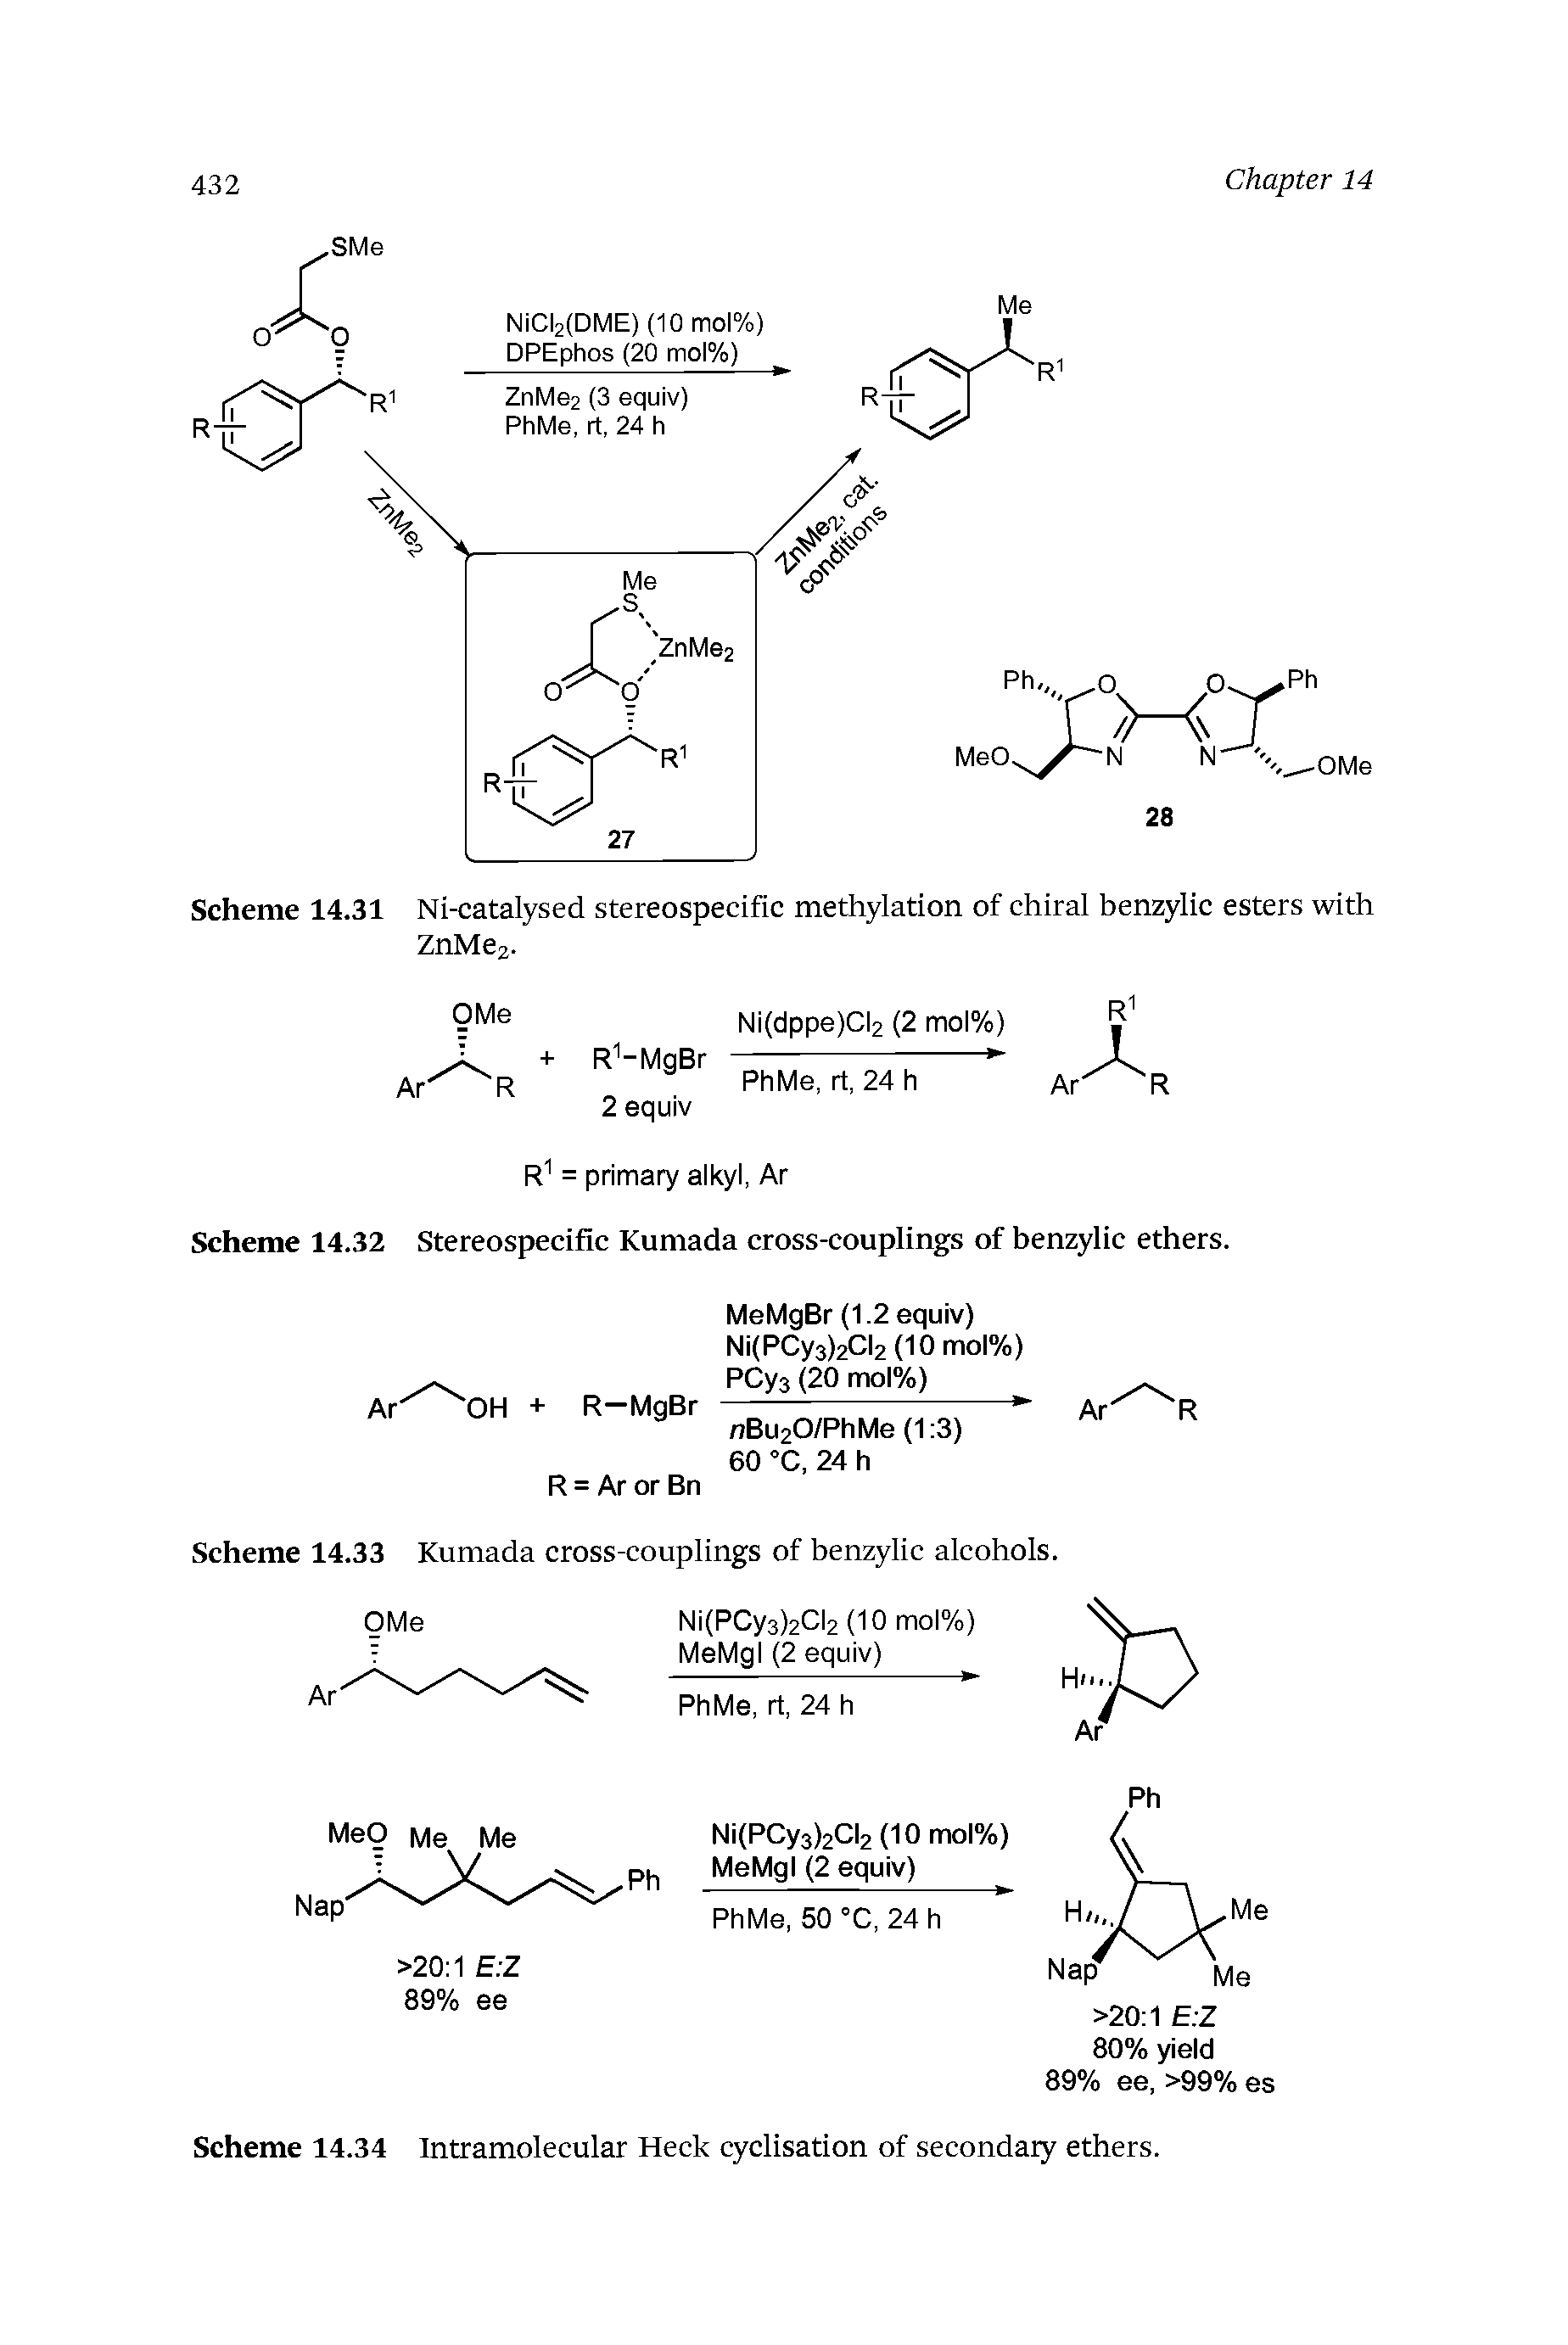 Scheme 14.33 Kumada cross-couplings of benzylic alcohols.